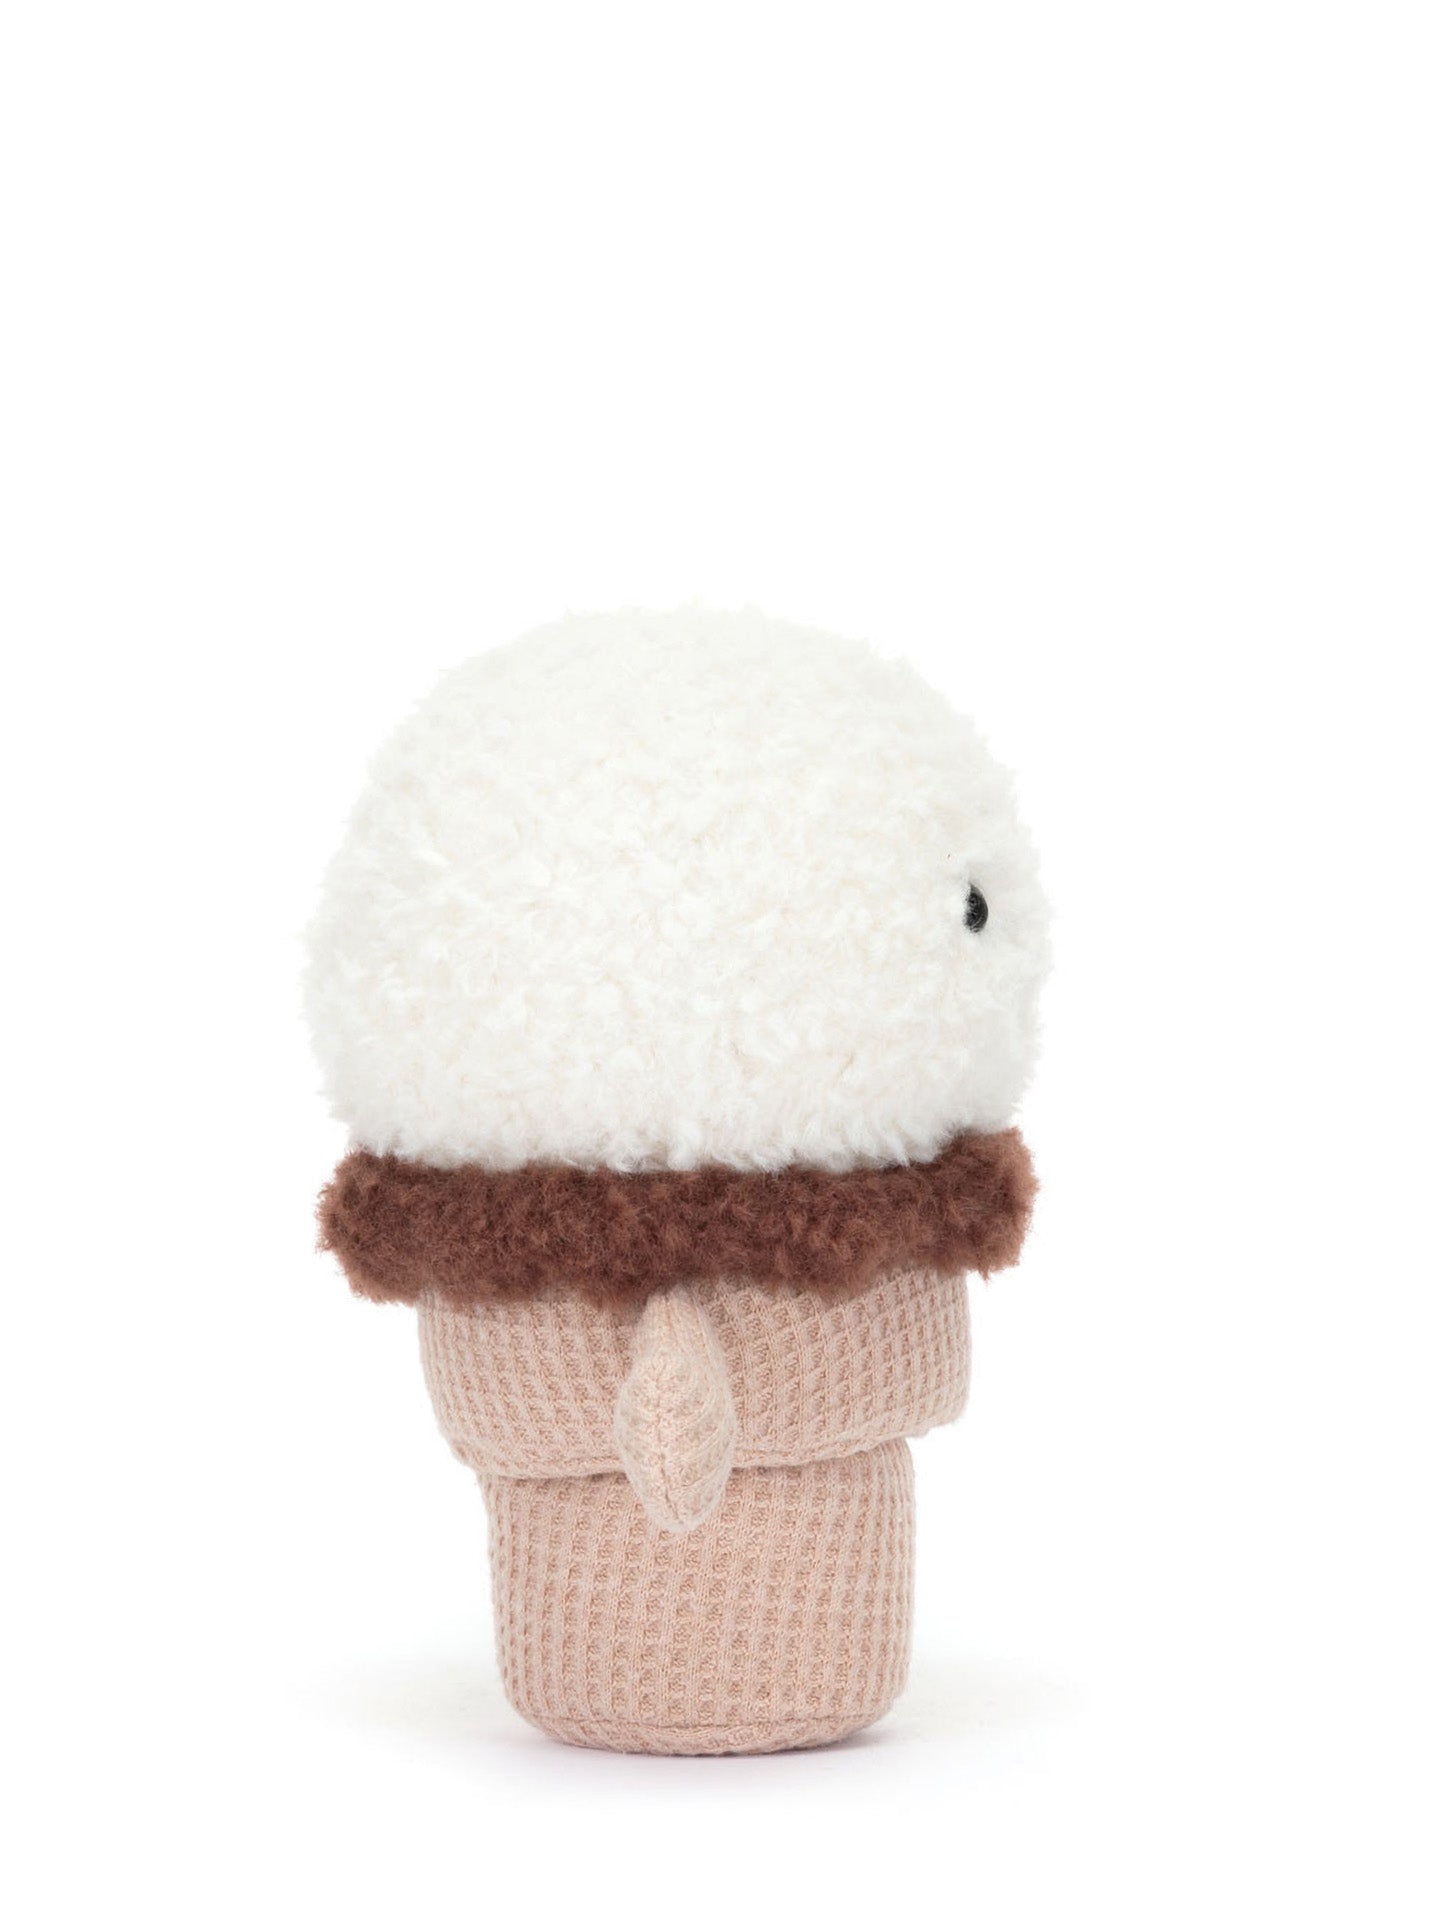 Amuseable Ice Cream Cone